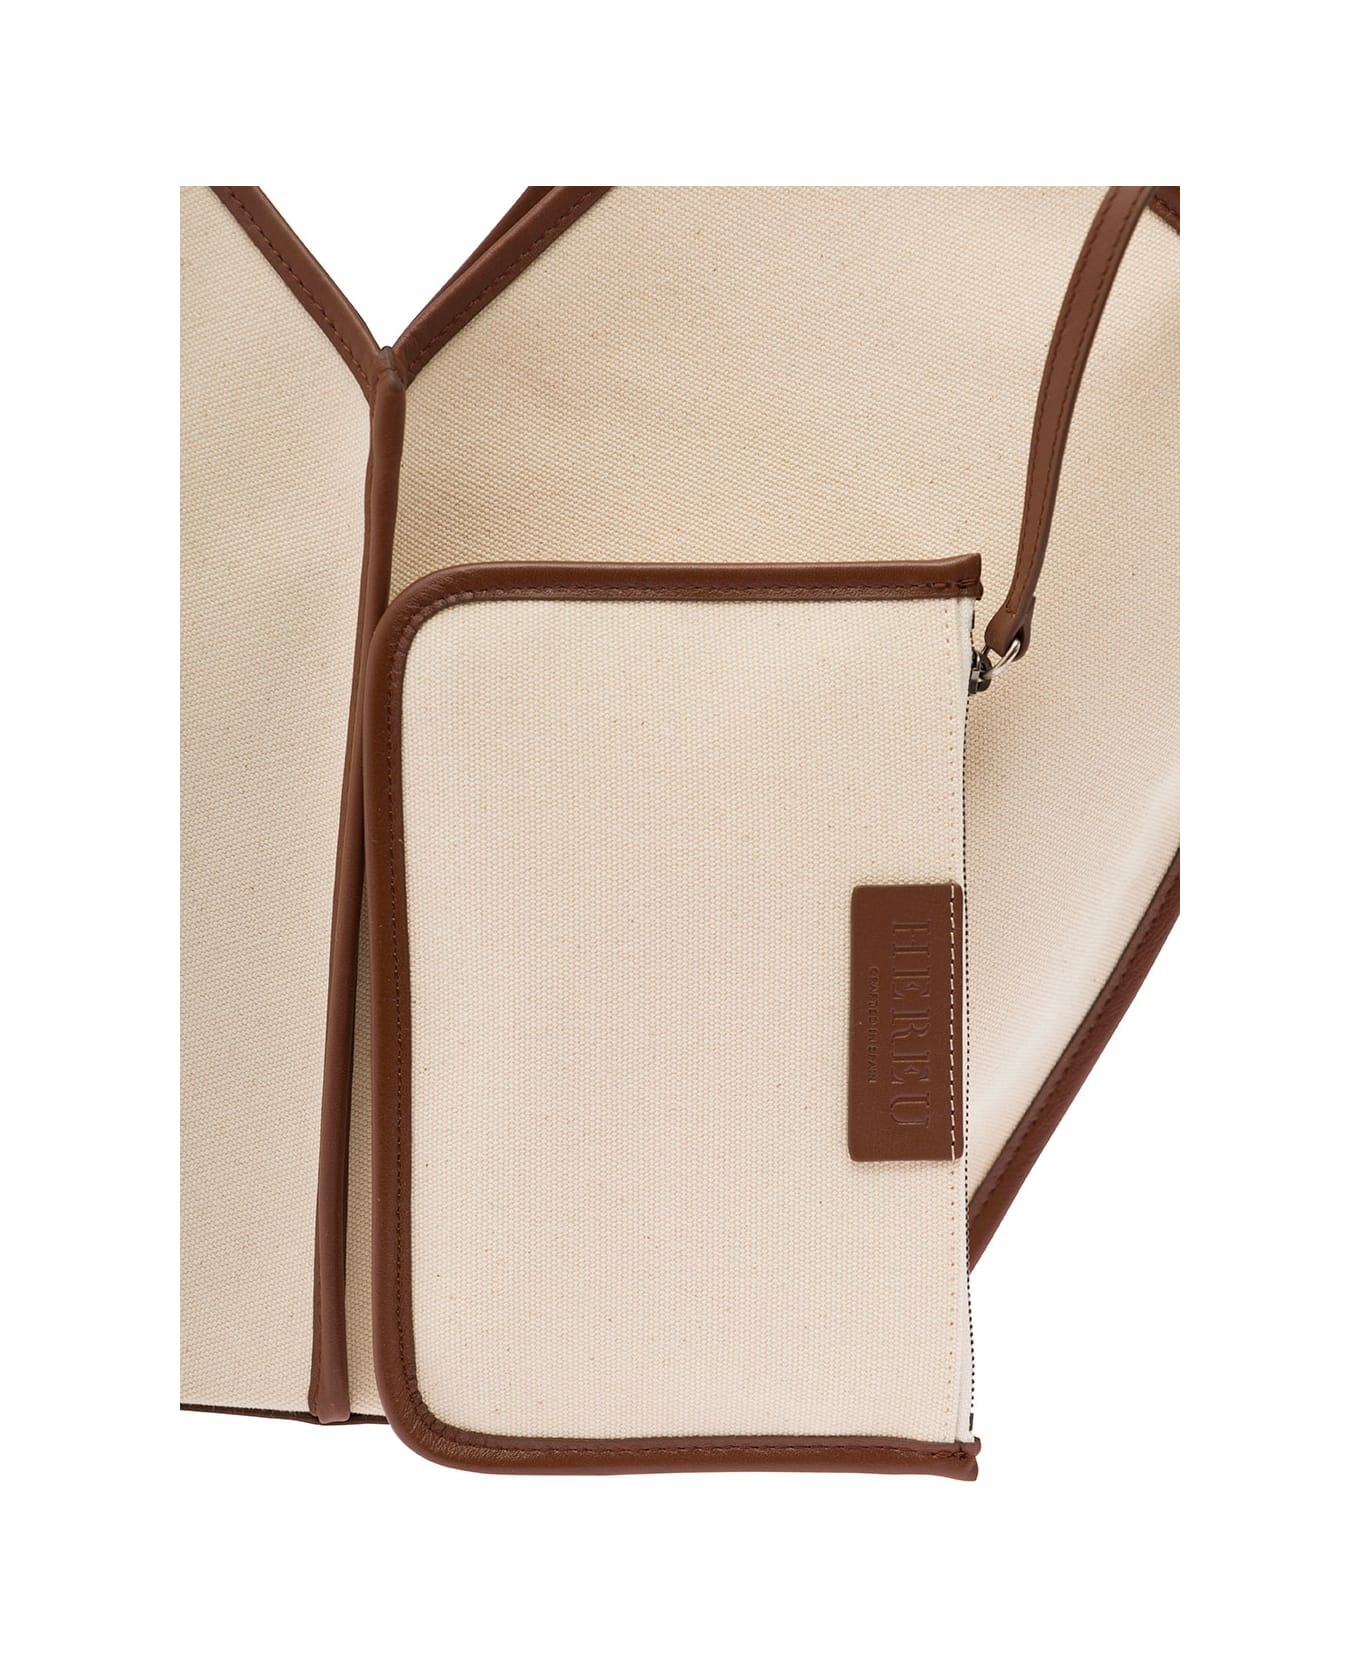 Hereu 'calella' Beige Tote Bag With Brown Leather Trim In Suede Woman - Beige